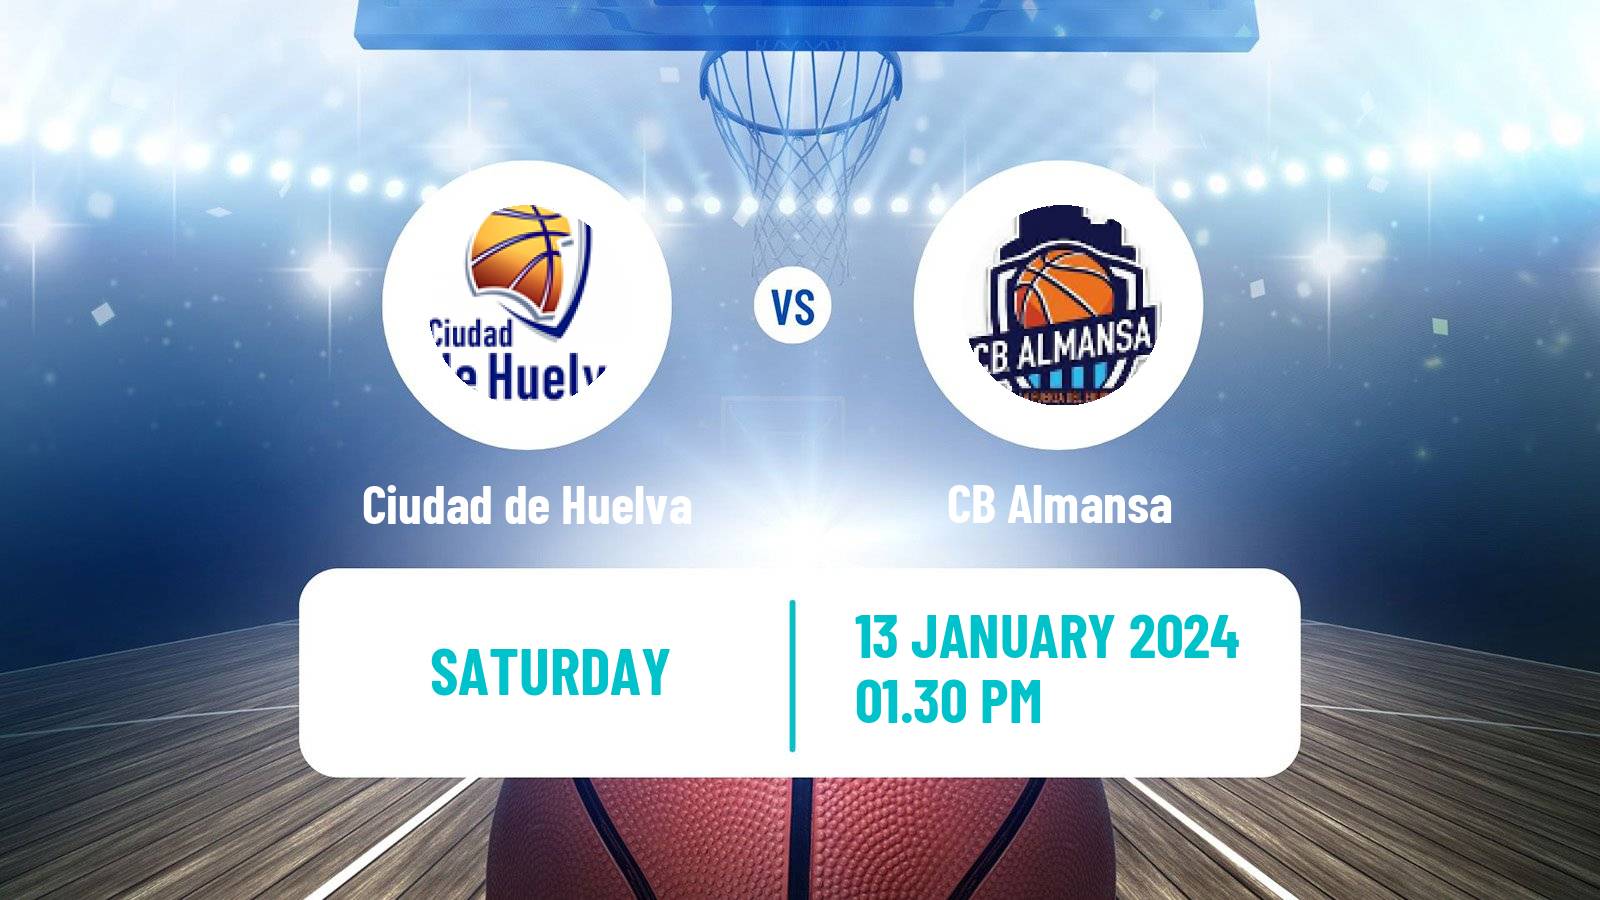 Basketball Spanish LEB Plata Ciudad de Huelva - Almansa